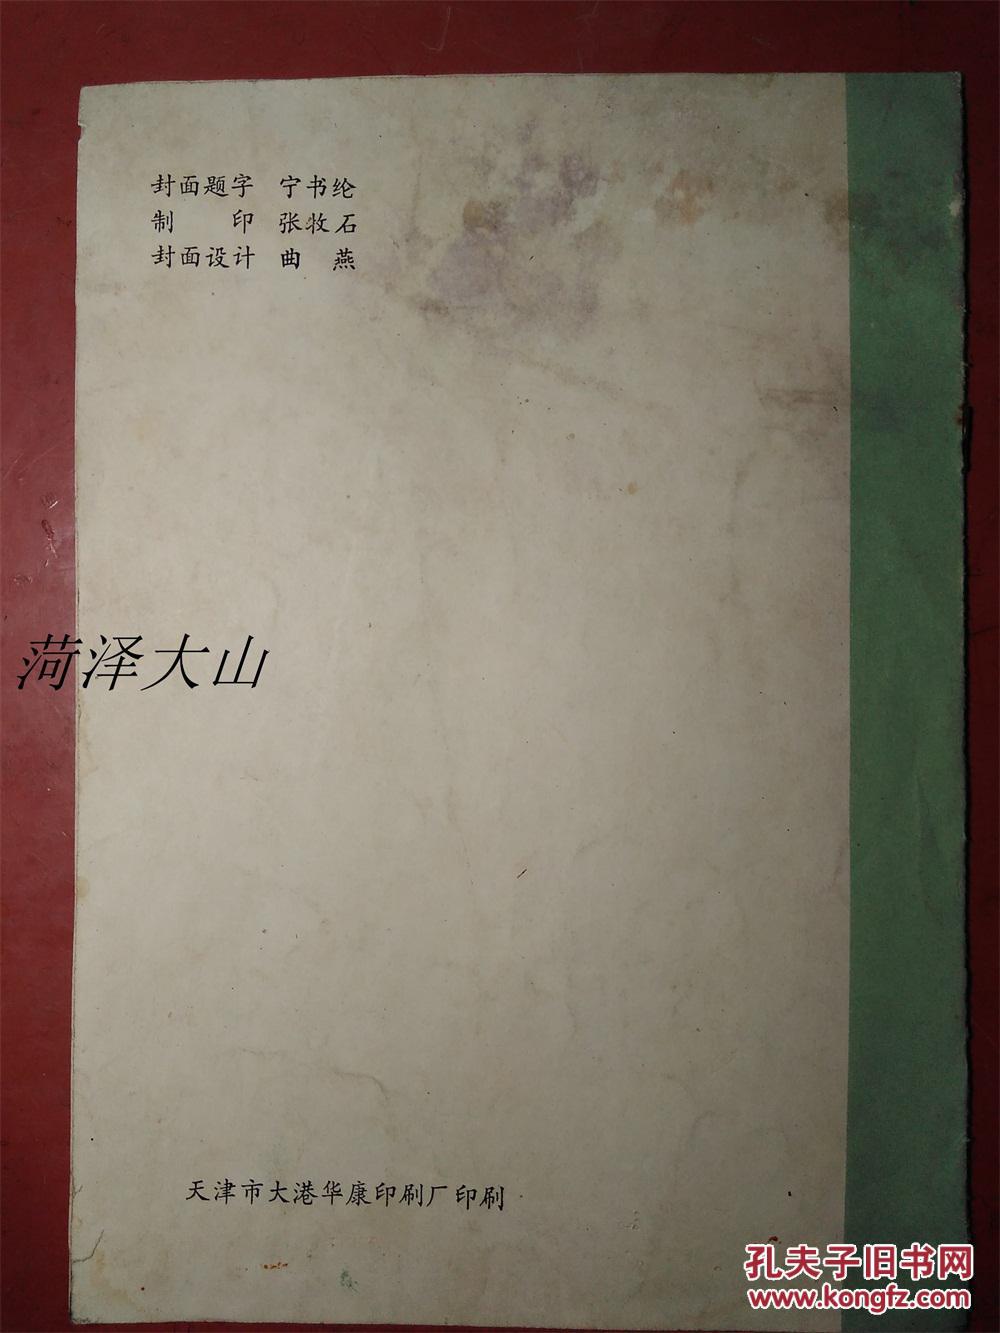 【图】中国书画报社1988年赠送神龙奖--王羲之